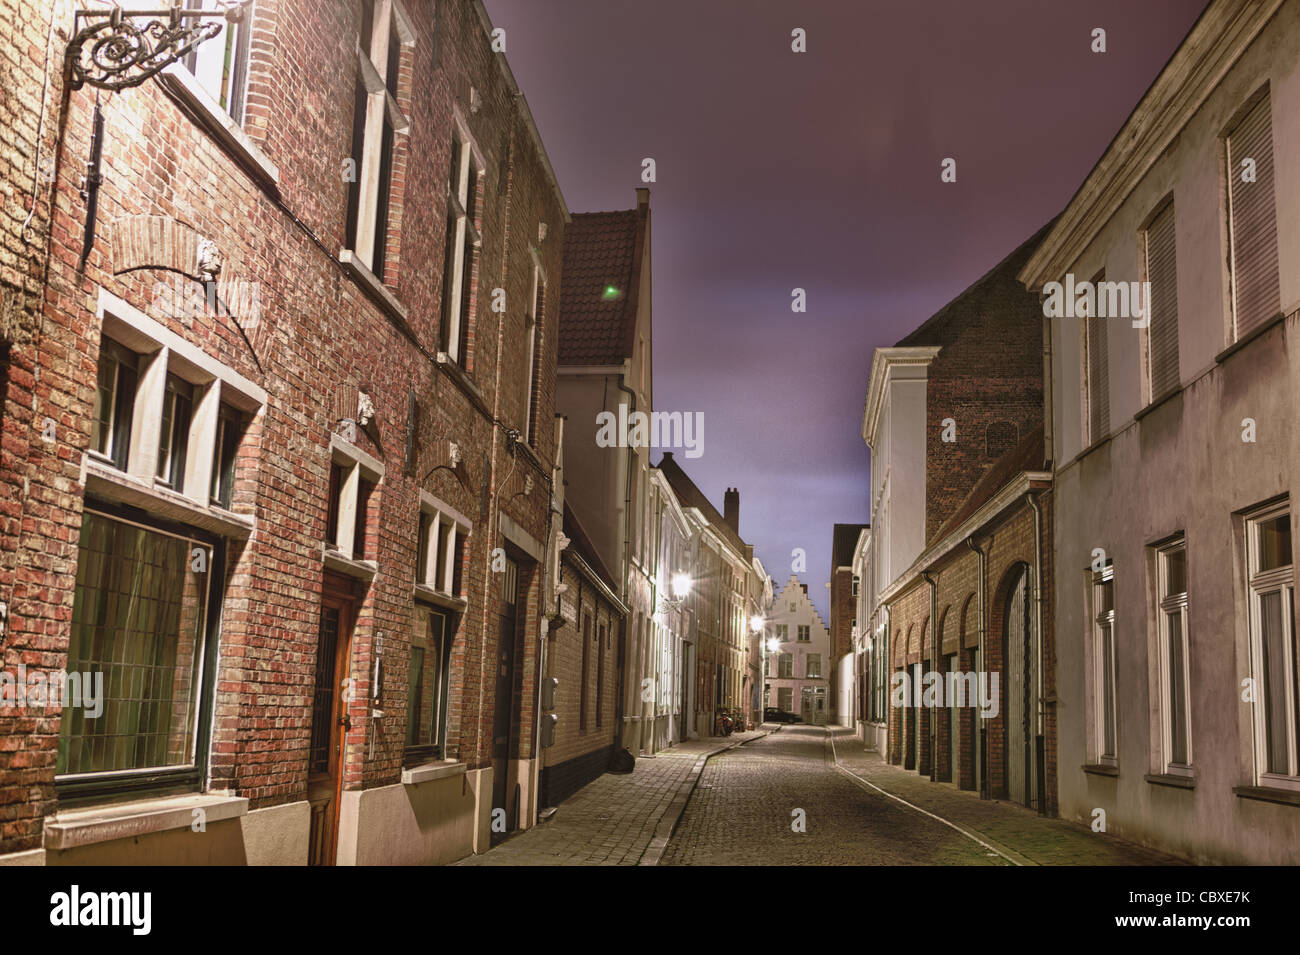 Rue médiévale traditionnelle à Bruges. Tir de nuit d'une rue à l'architecture traditionnelle flamande de Bruges en Belgique. Banque D'Images